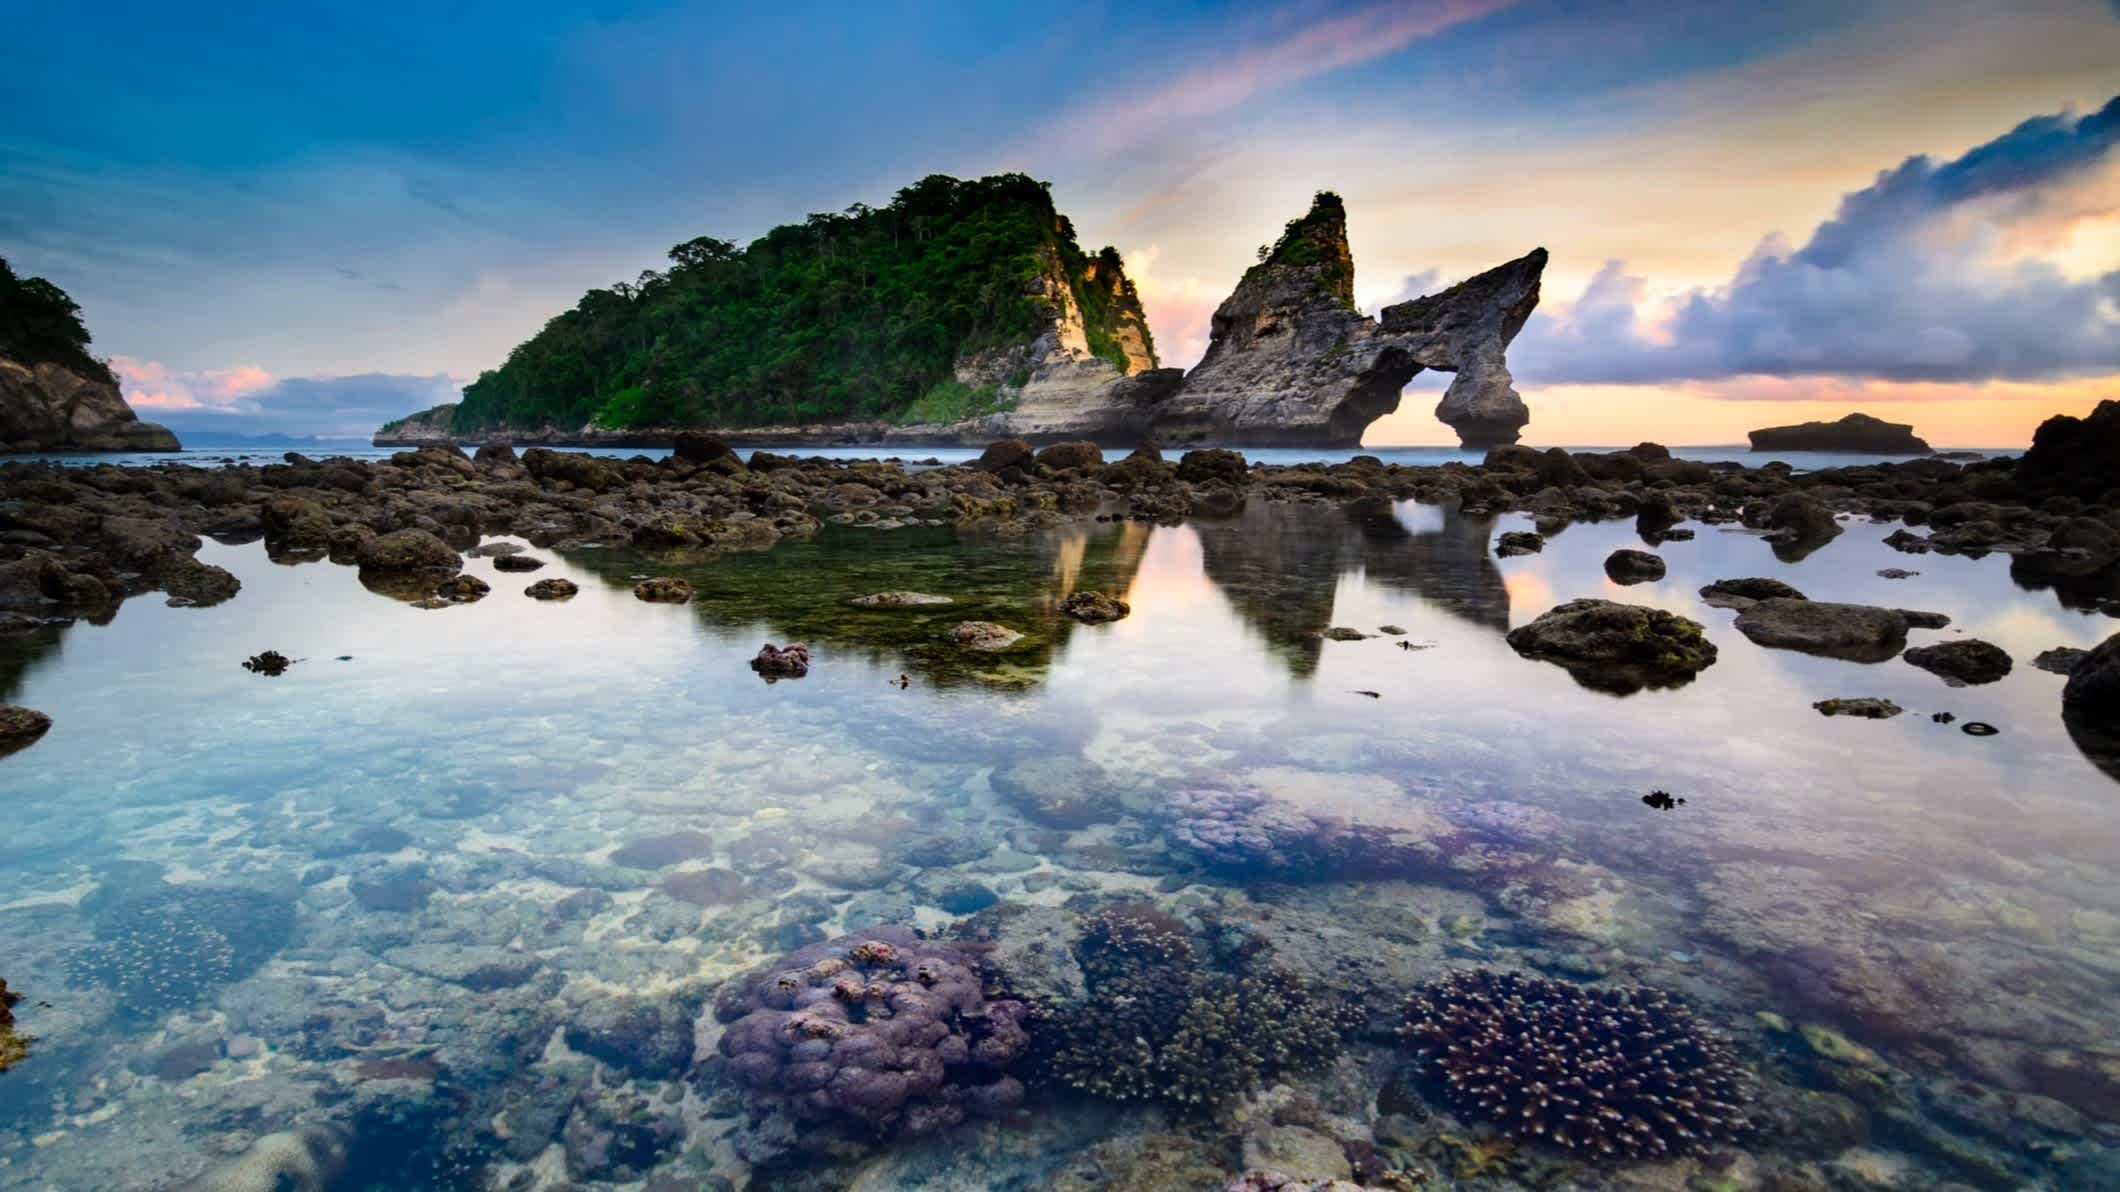 eau transparente entourée de rochers au soleil couchant sur la plage d'Atuh en Indonésie